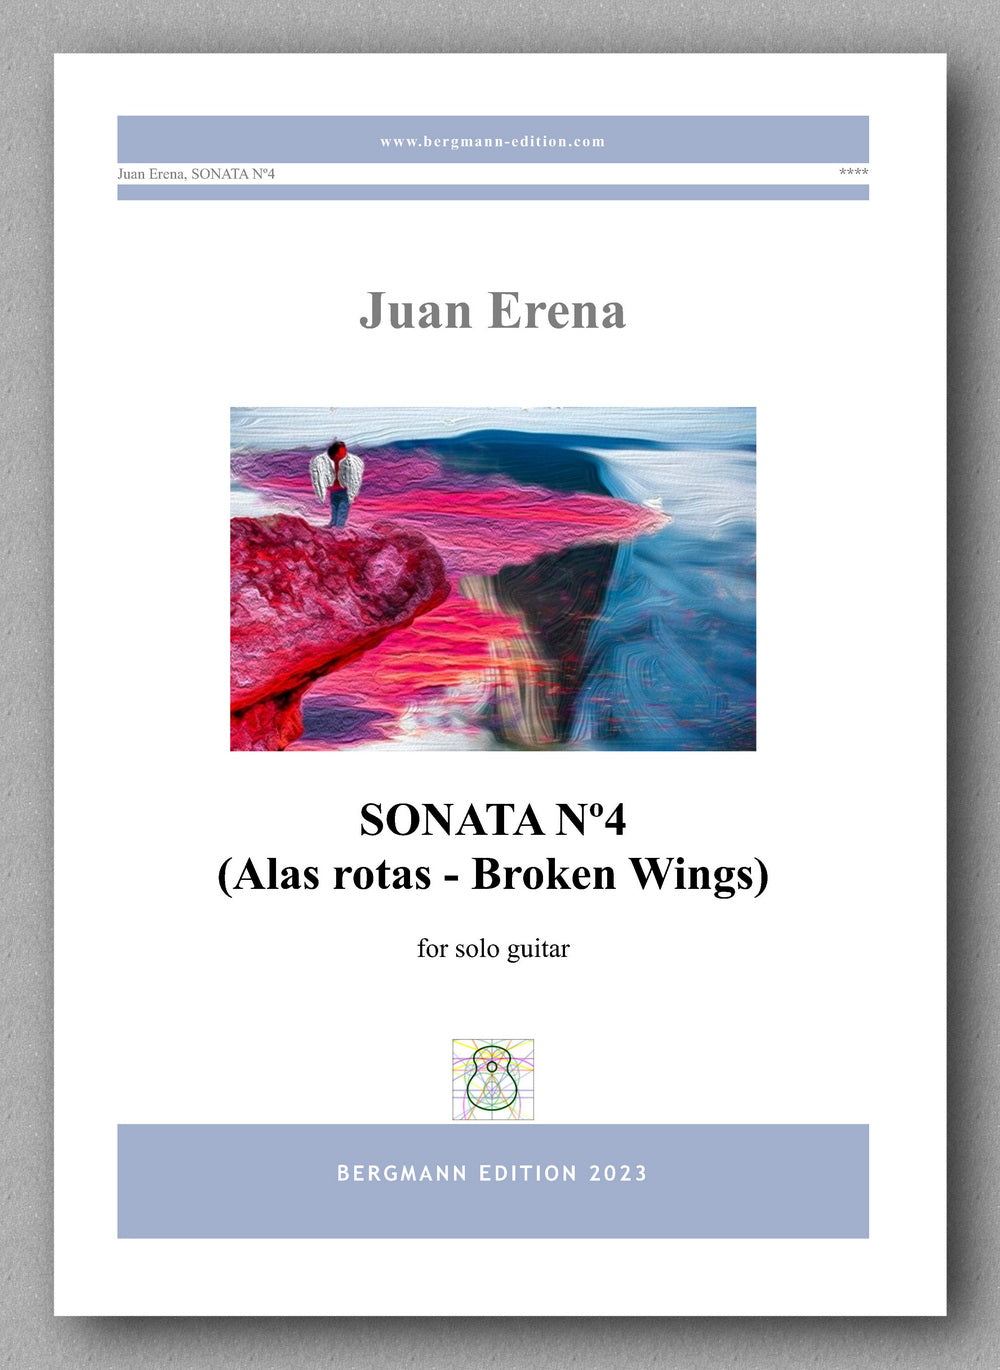 Juan Erena, Sonata IV, (Alas rotas - Broken Wings) - preview of the cover